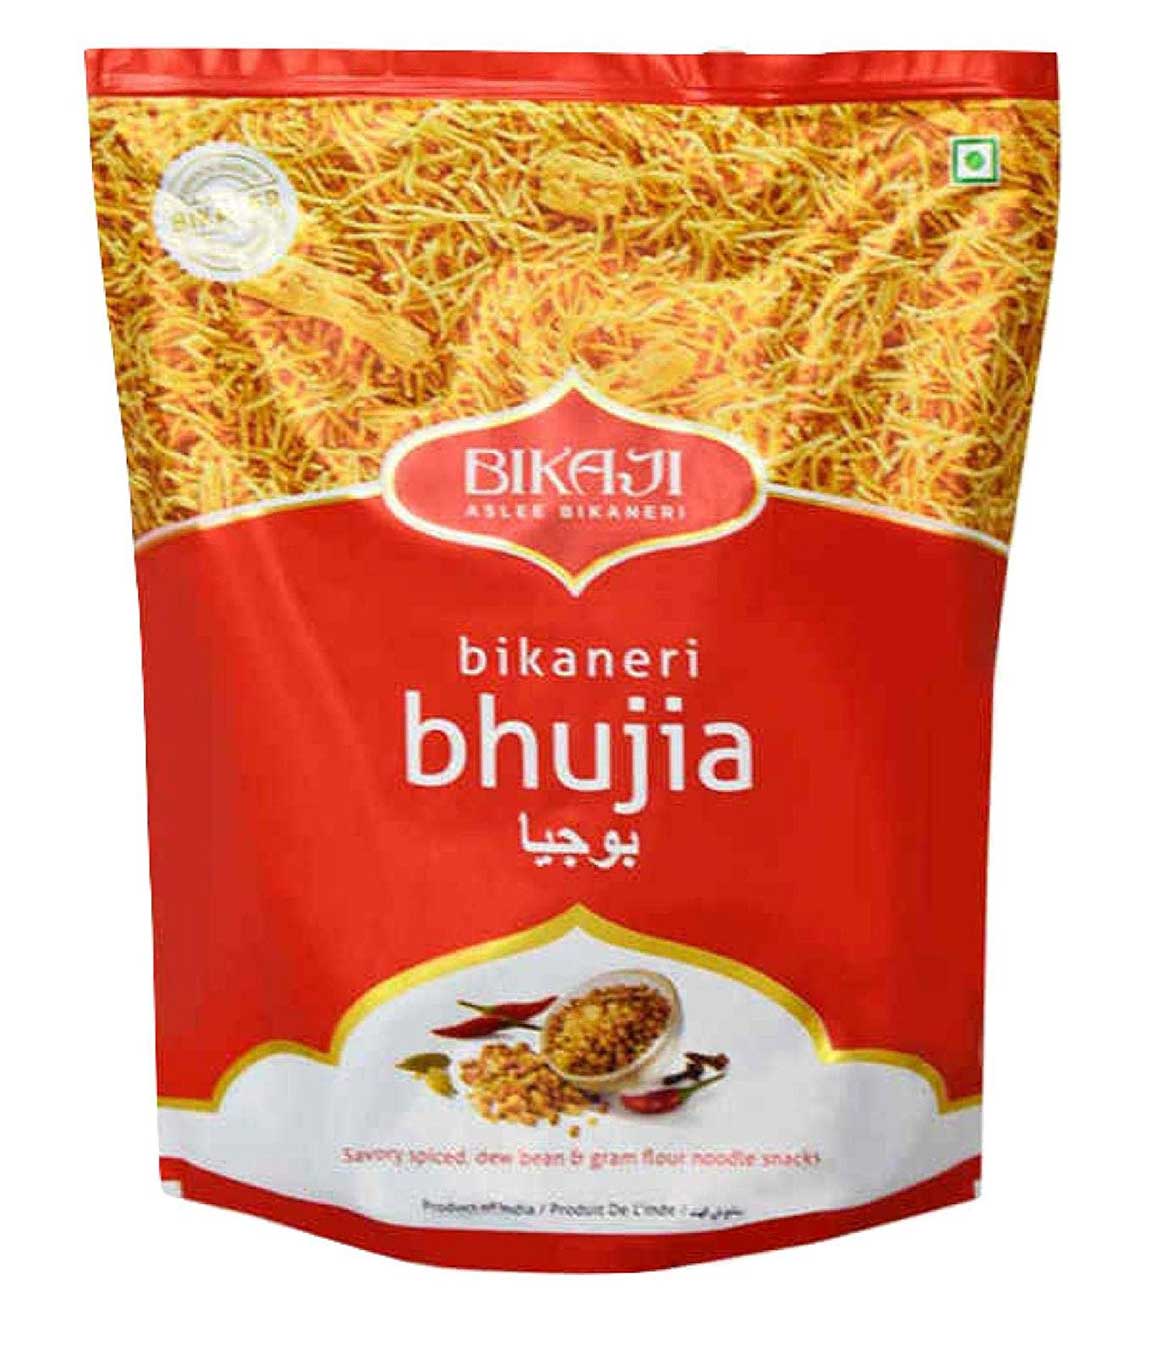 Bikaji Snack Combo Pack - Bikaji Bhujia 400g & Bikaji Moong Daal 400g - Pack of 2